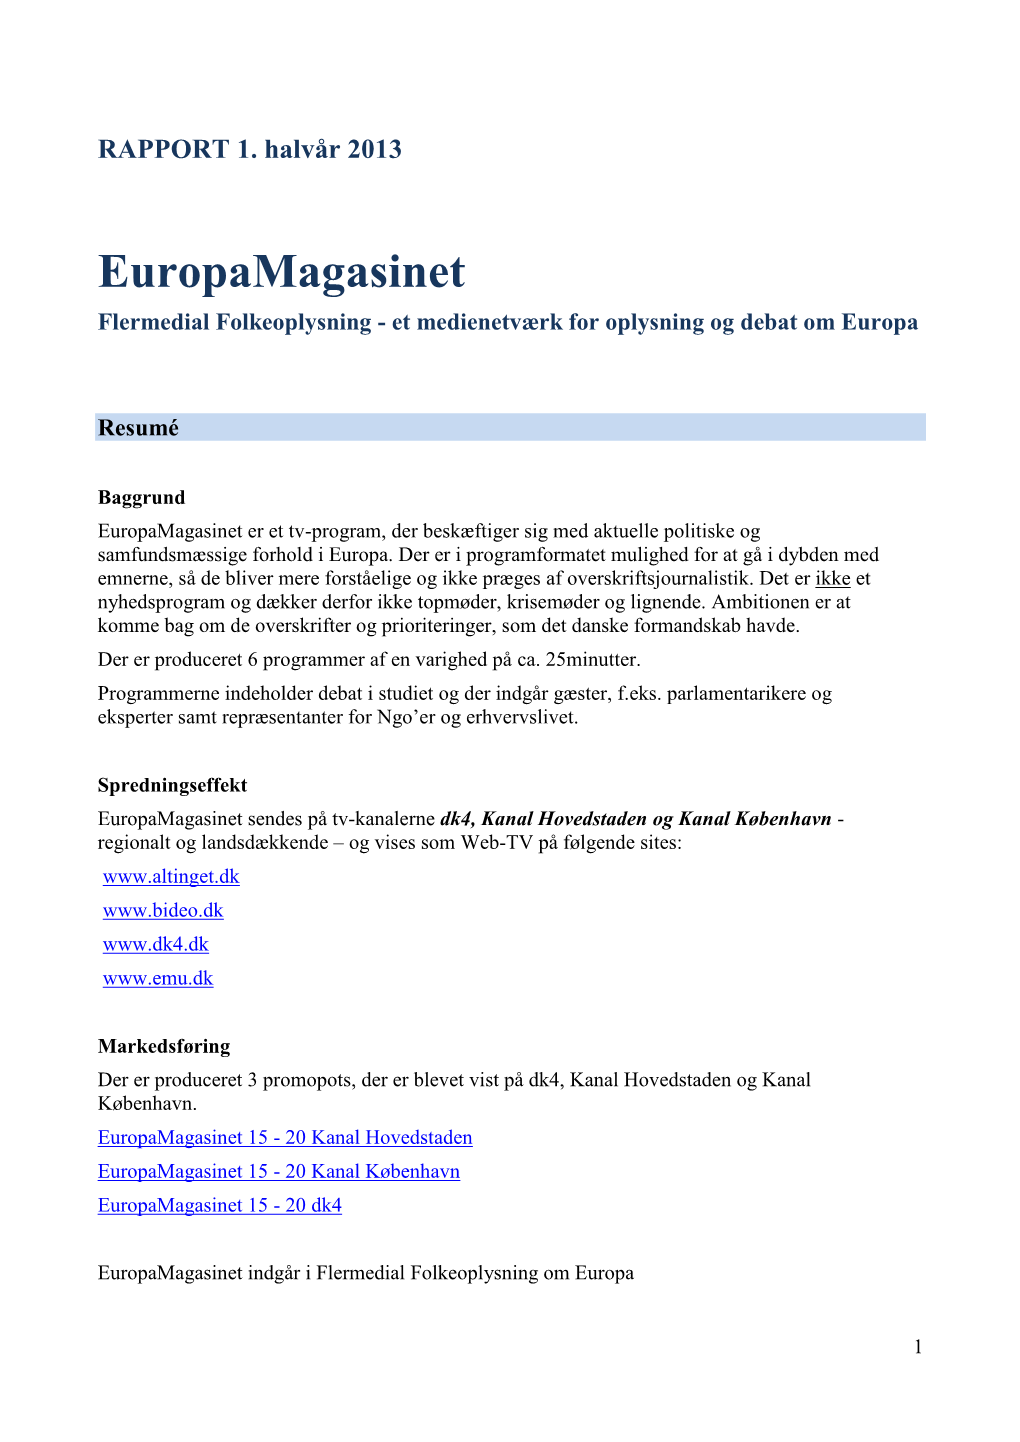 Europamagasinet Flermedial Folkeoplysning - Et Medienetværk for Oplysning Og Debat Om Europa